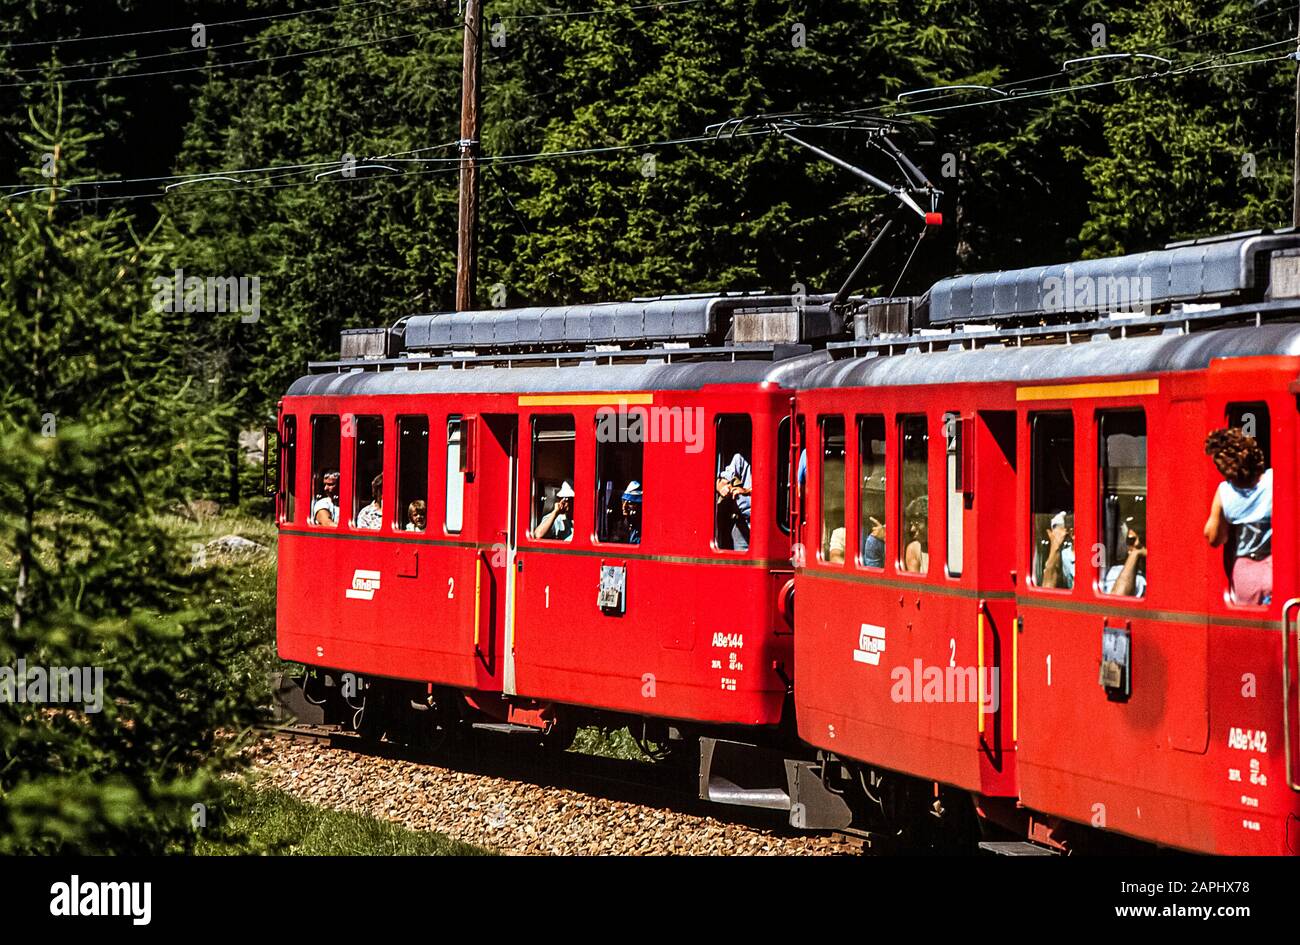 Switzerland Rhaetian Railway Stock Photo